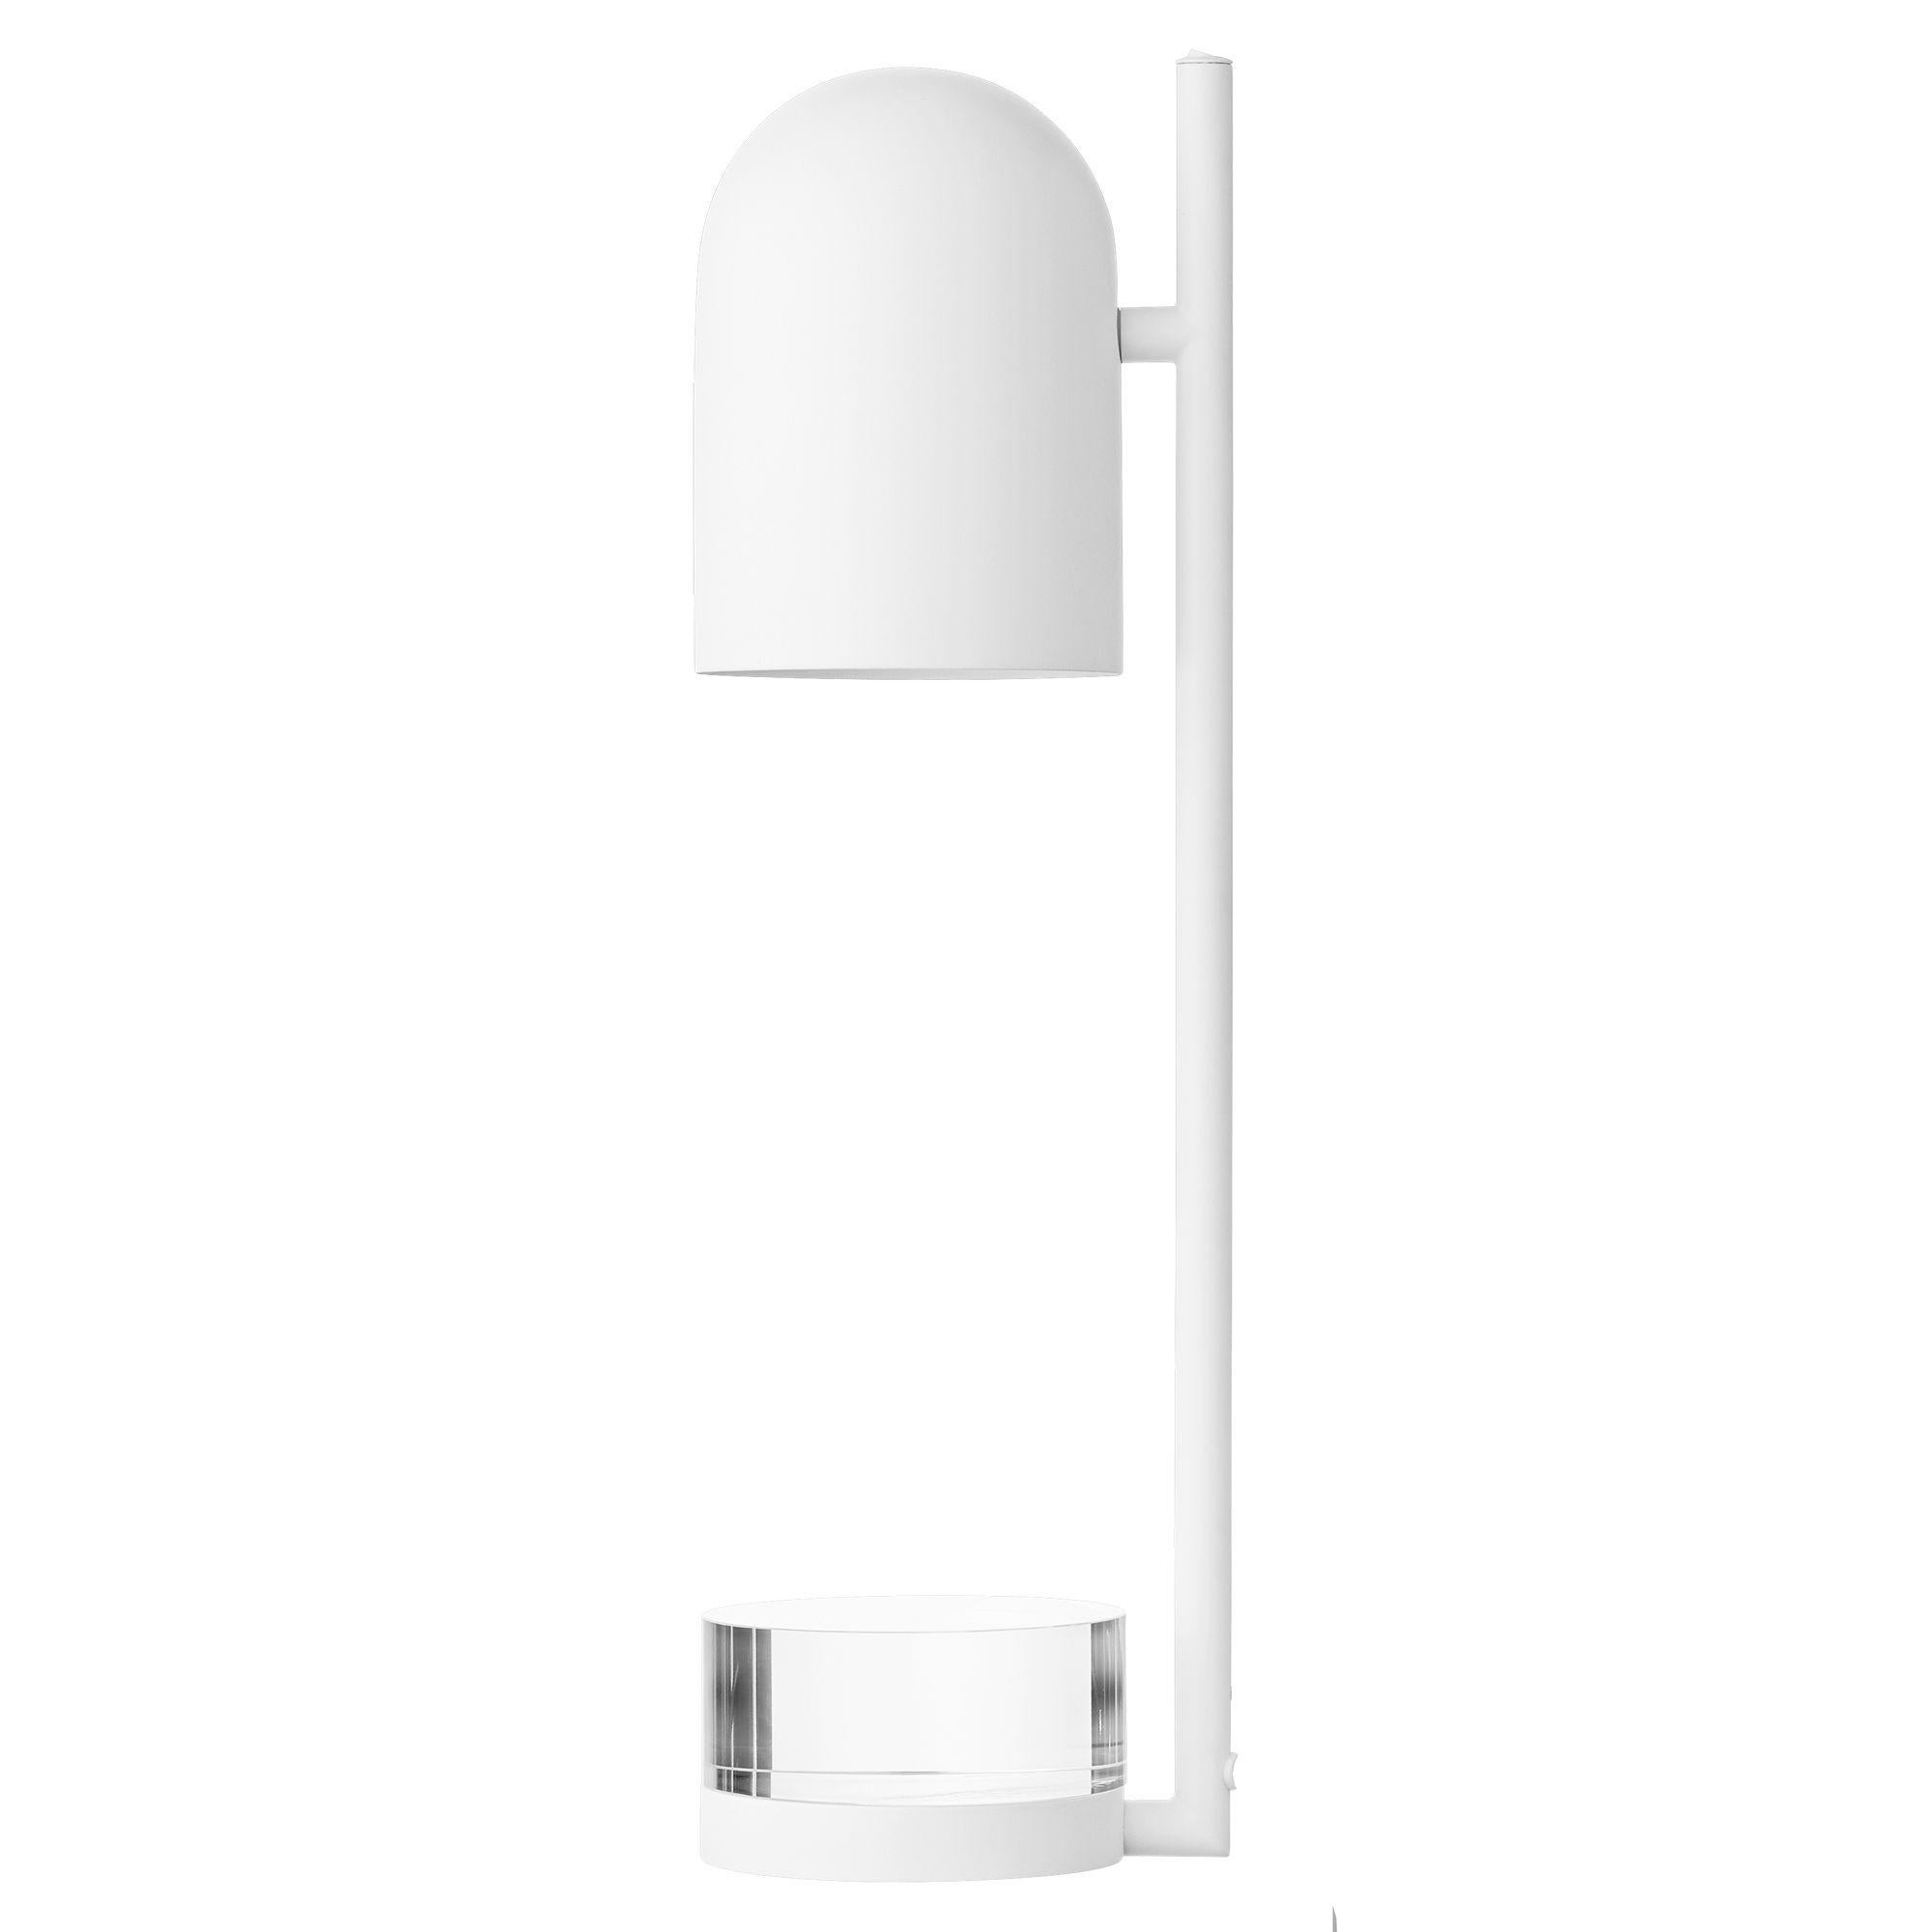 Lampe à poser Cylindre blanc
Dimensions : Diamètre 12 x H 50 cm 
MATERIAL : Verre, Fer w. Placage de laiton et revêtement par poudre.
Détails : Pour toutes les lampes, la source lumineuse recommandée est E27 max 25W&220/240 voltage. Nous